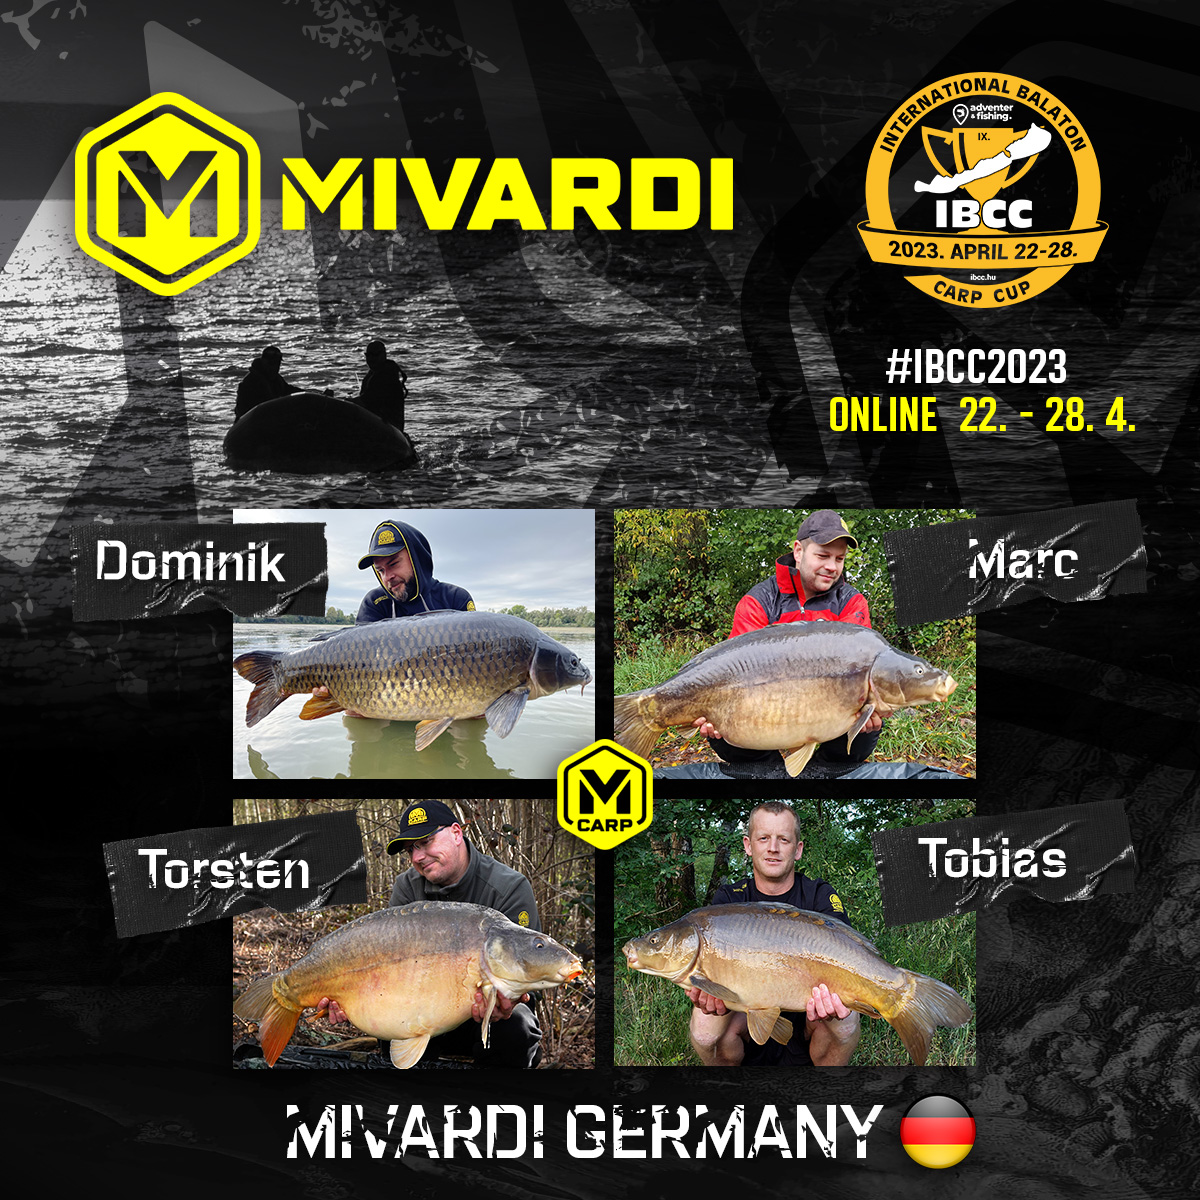 mivardi-germany-deutschland-ibcc-2023.jpg (642 KB)